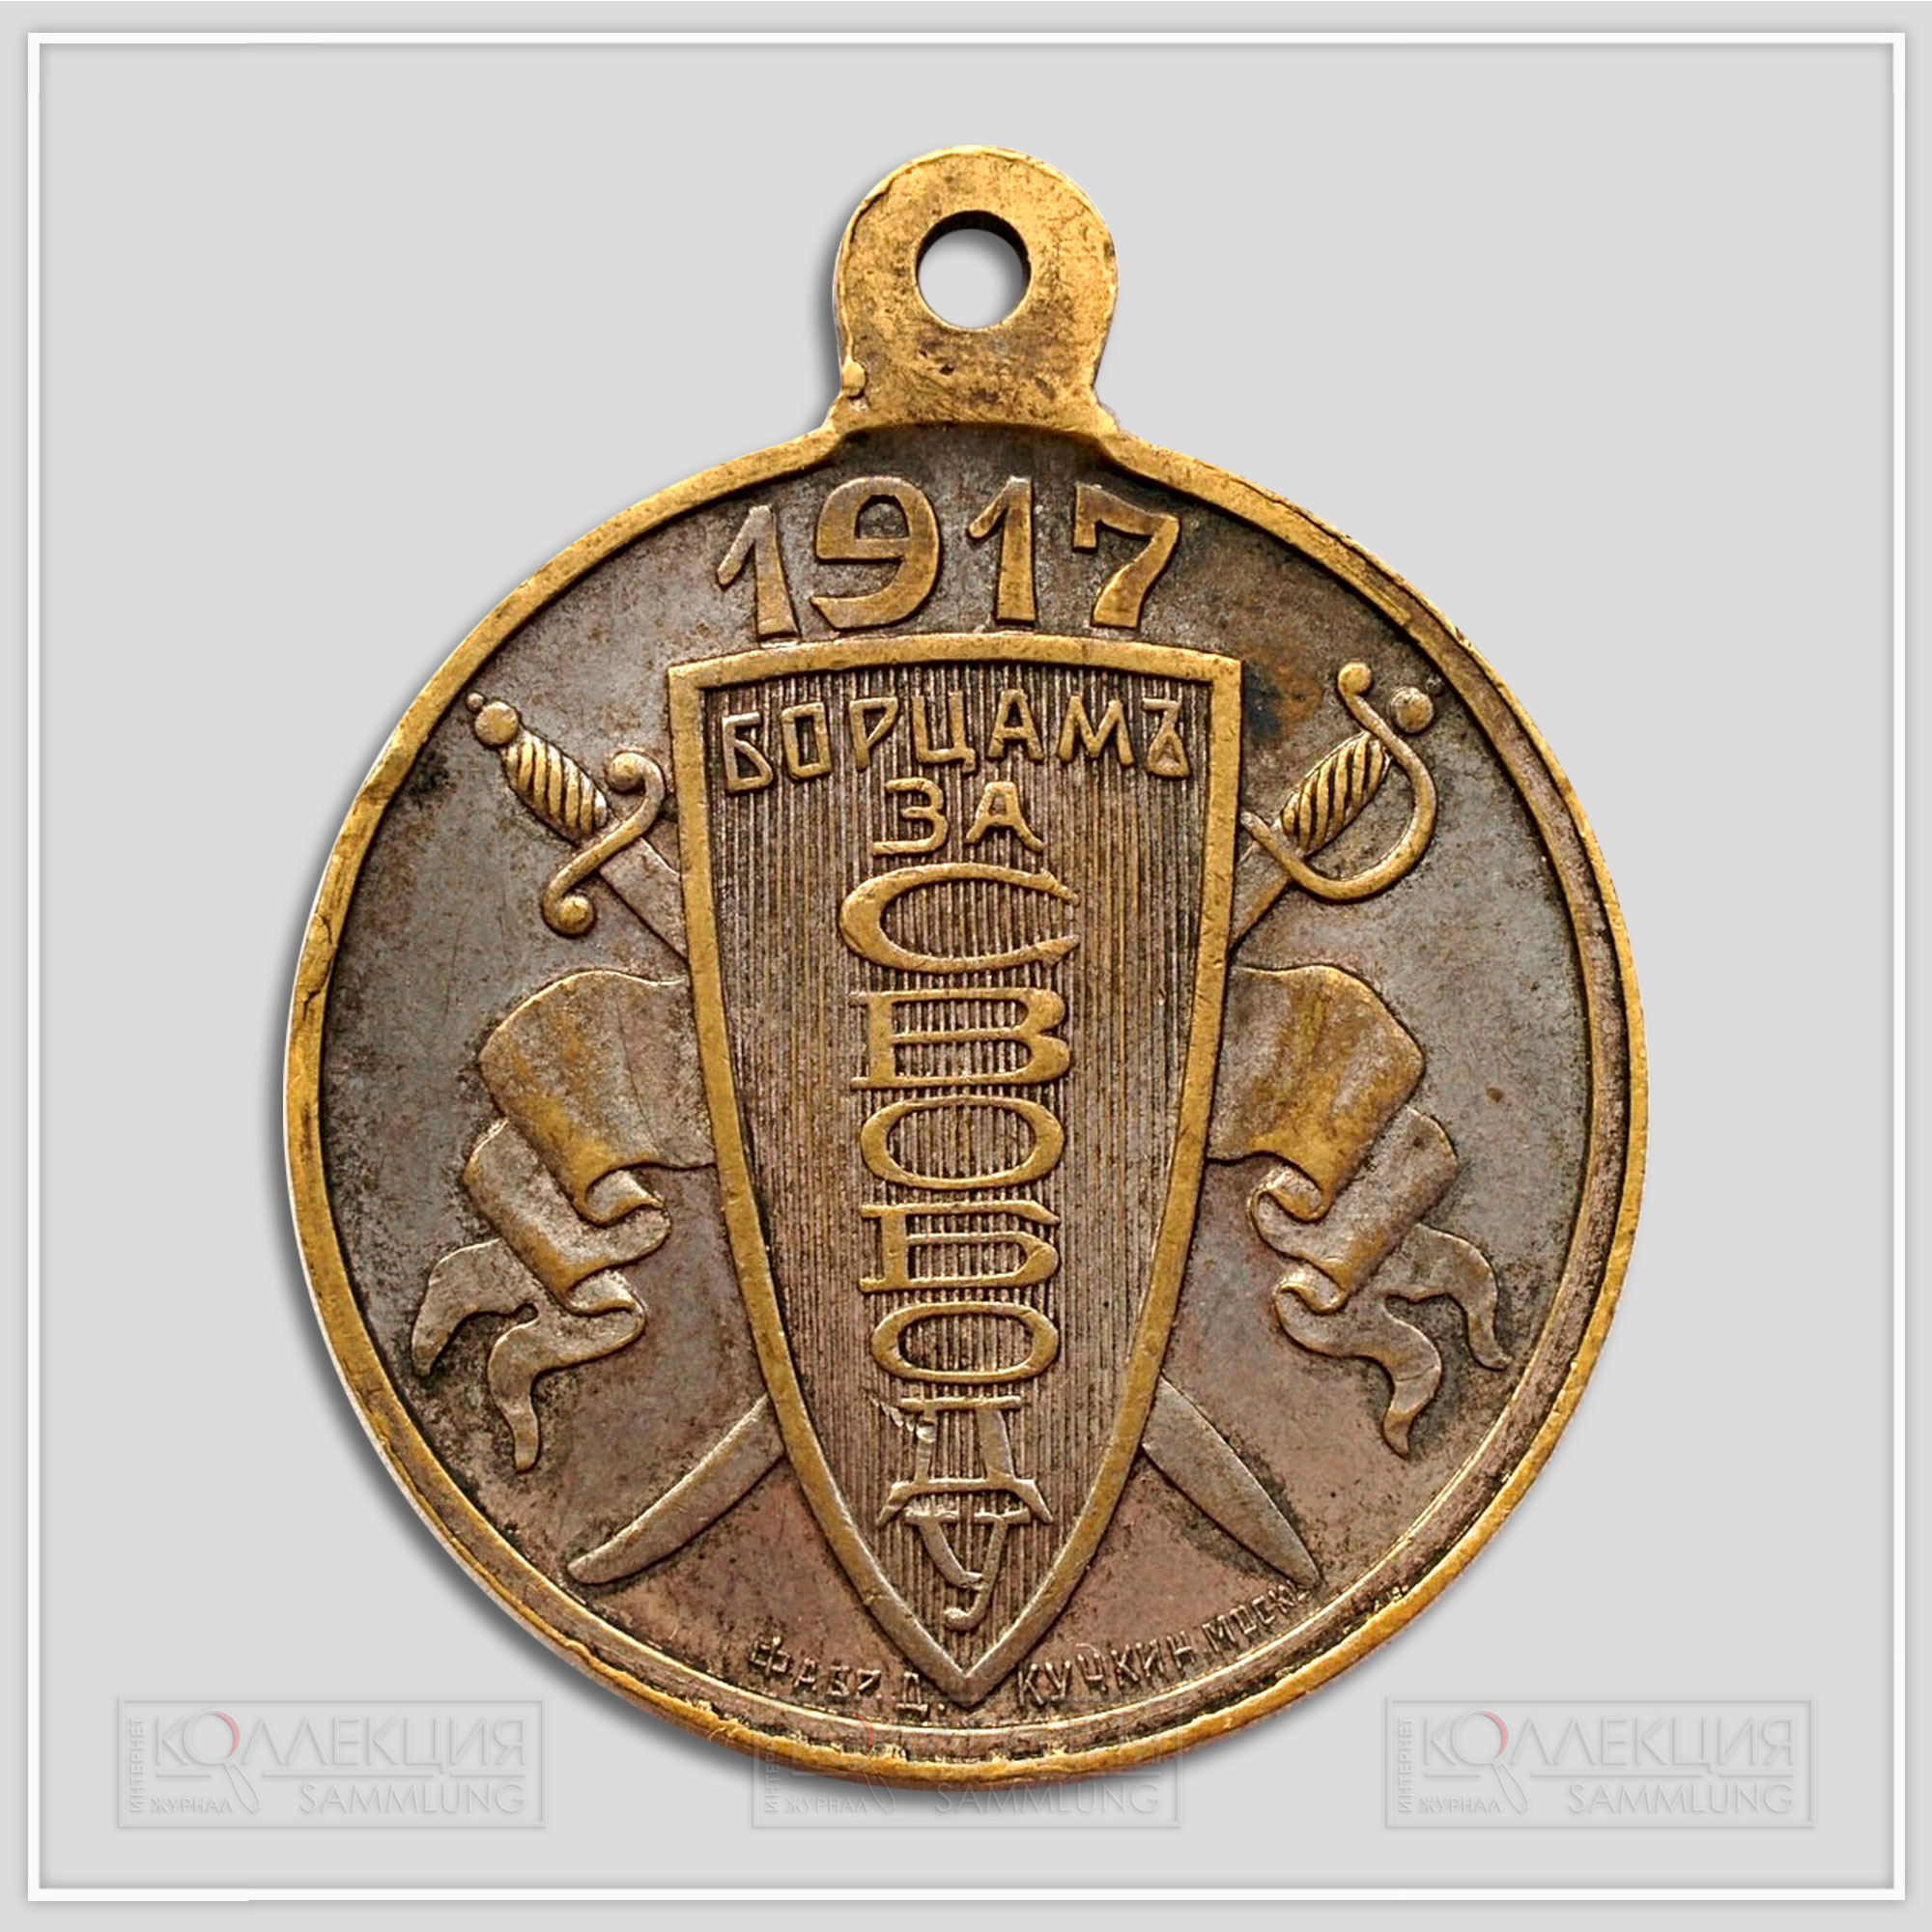 Медаль (жетон) «Борцам за свободу» 1917 Временное правительство (Из архива Фалеристика.инфо. Разместил коллега Carter Slade)